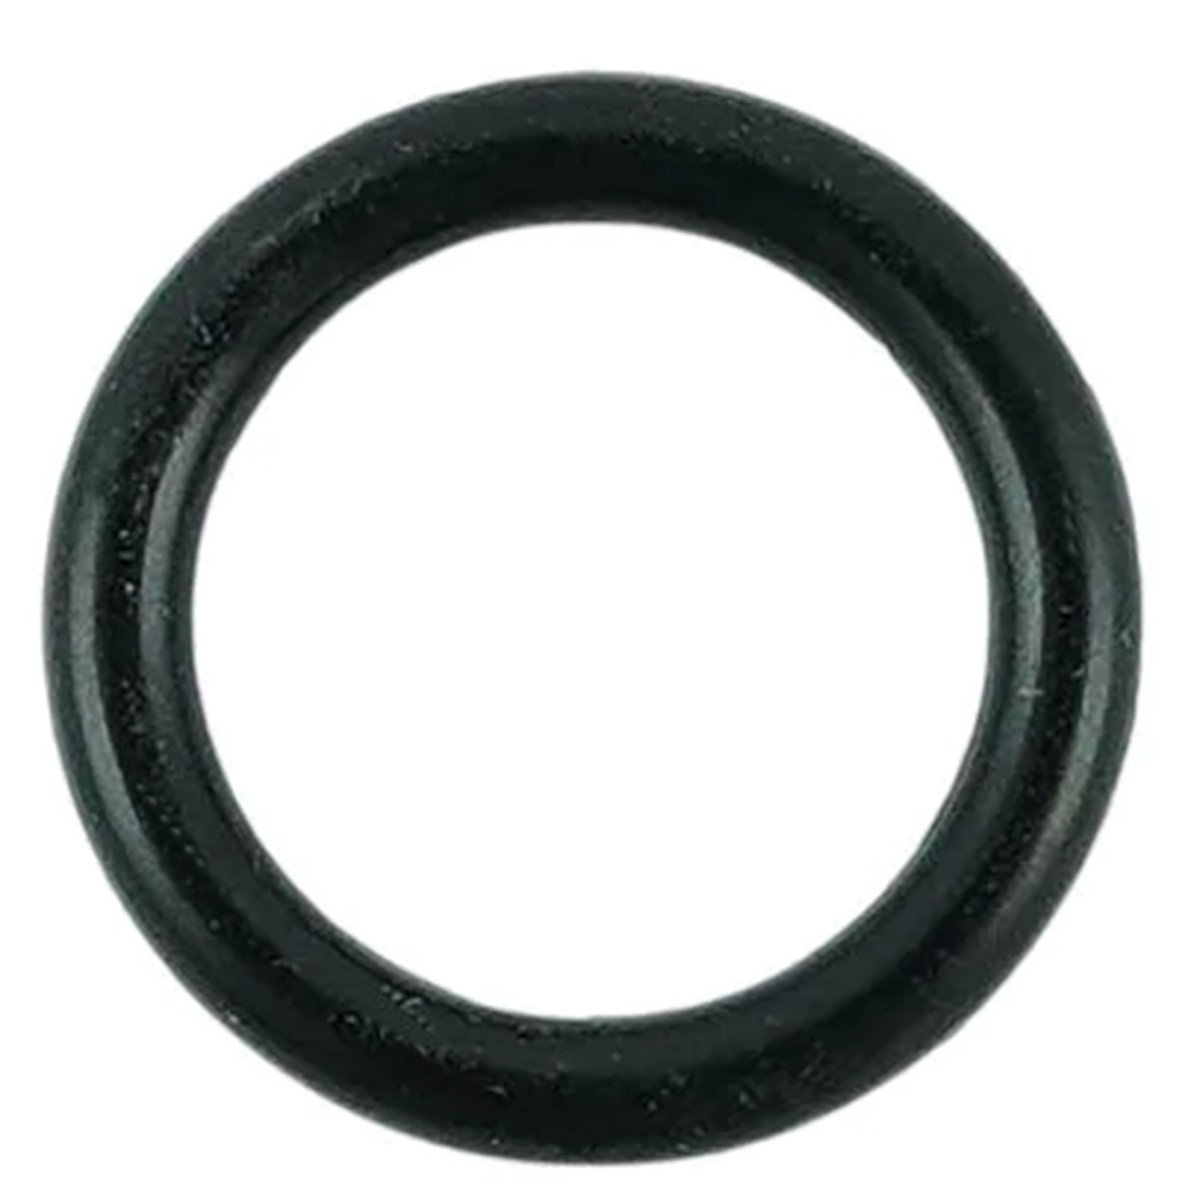 O-Ring 9,80 x 2,40 mm / LS MT3,35 / LS MT3,40 / LS XJ25 / S801010011 / 40029194